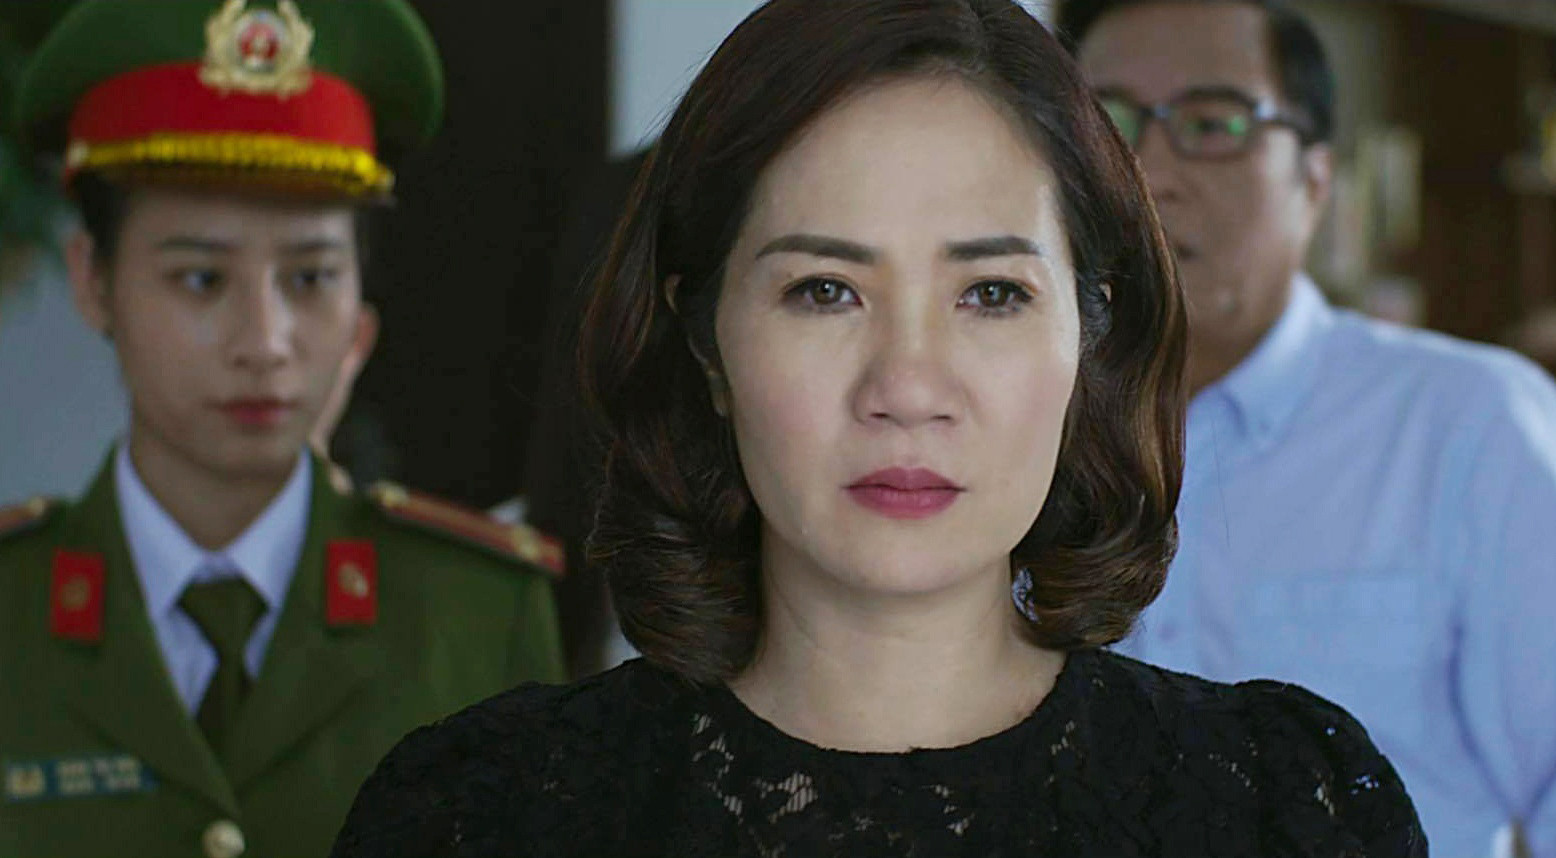 Diễn viên Nguyệt Hằng được đánh giá cao qua vai diễn bà Hoài trong phim “Hãy nói lời yêu”.